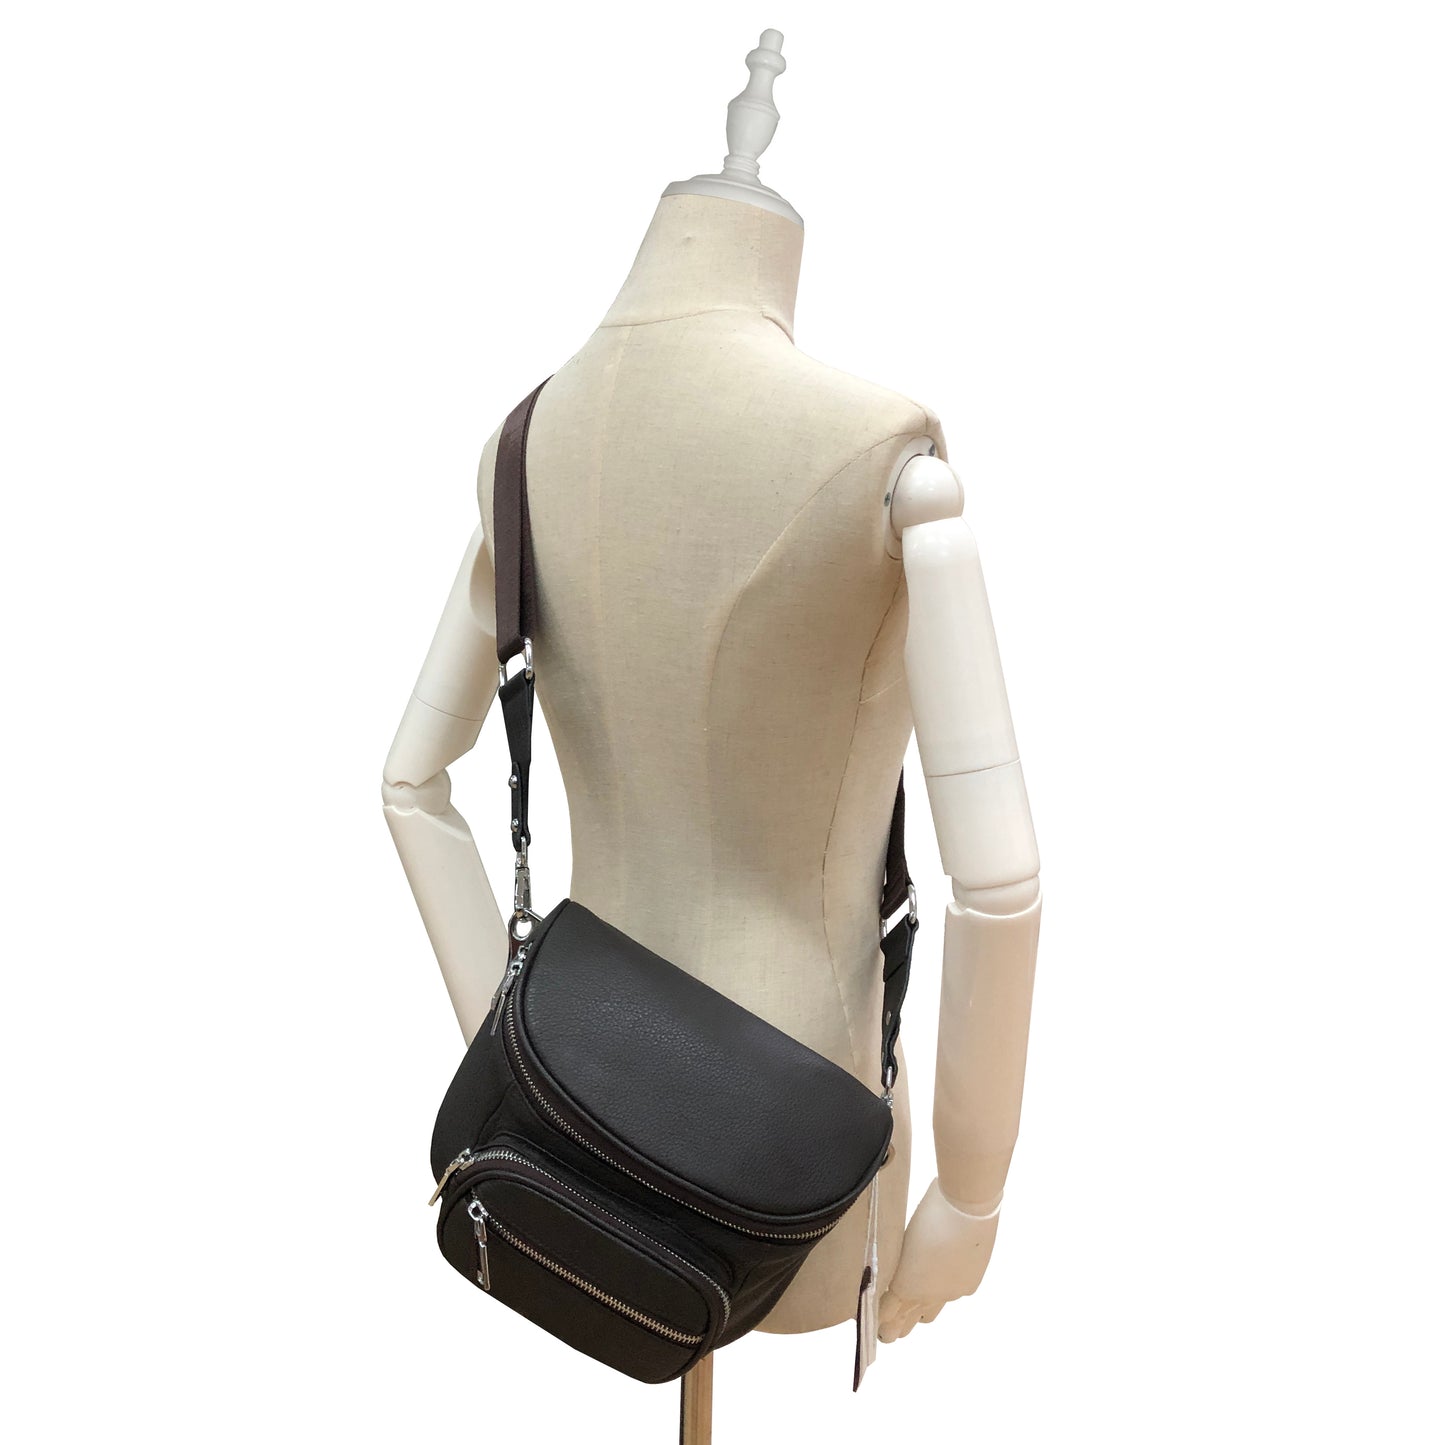 Women's genuine cowhide leather handbag Tilo design camera bag by Tomorrow Closet